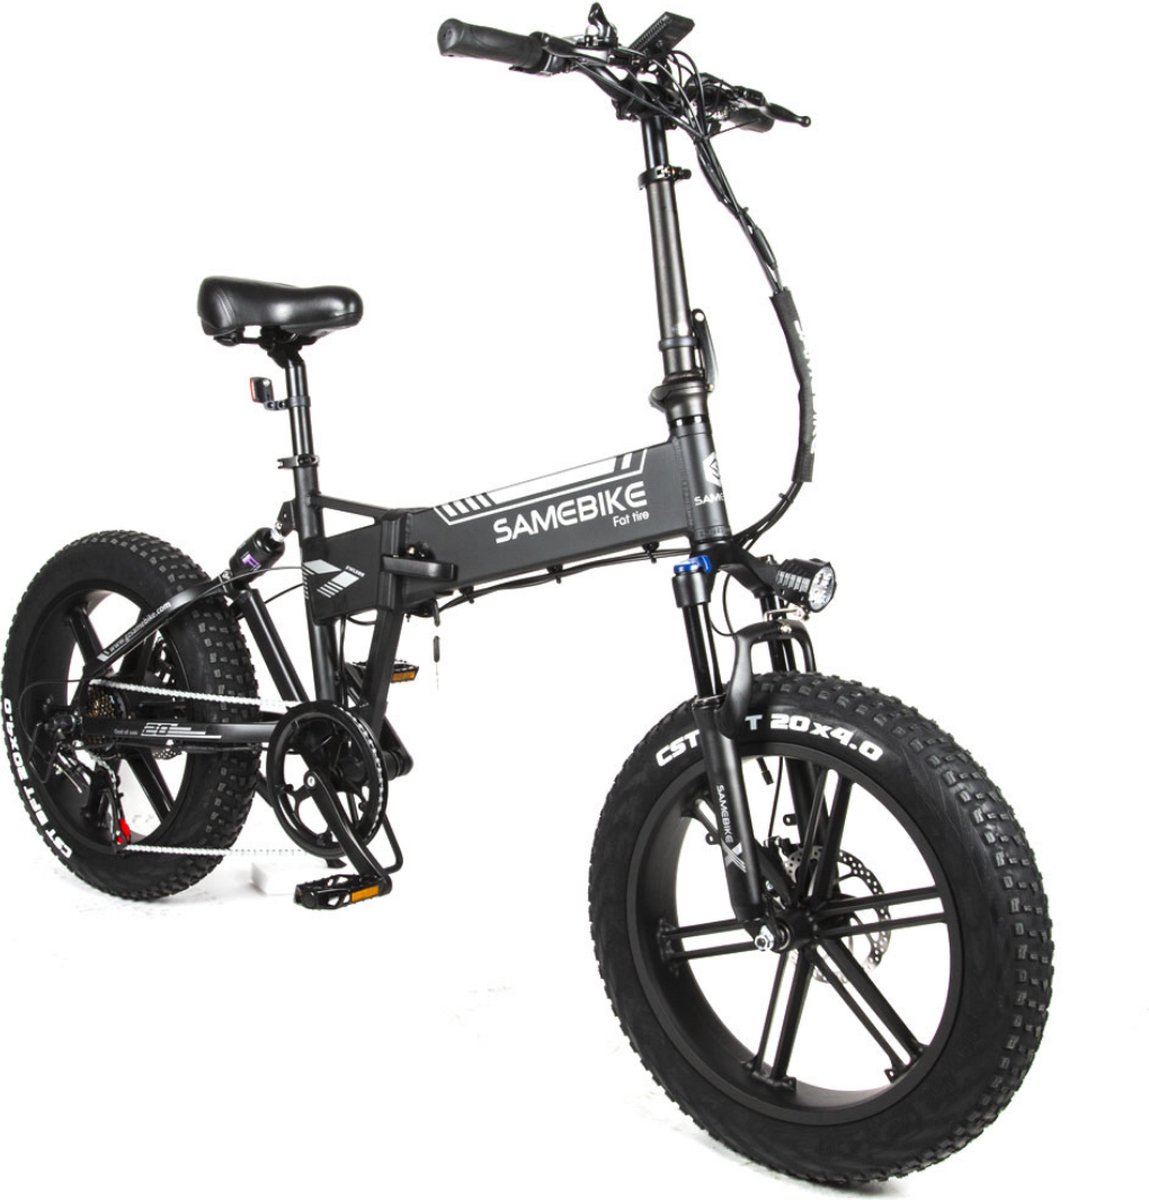 P4B - Fatbike - Elektrische Fatbike - Elektrische Fiets - Elektrische Vouwfiets - E-bike - 1 jaar garantie - Grijs - Legaal openbare weg (8720849461863)